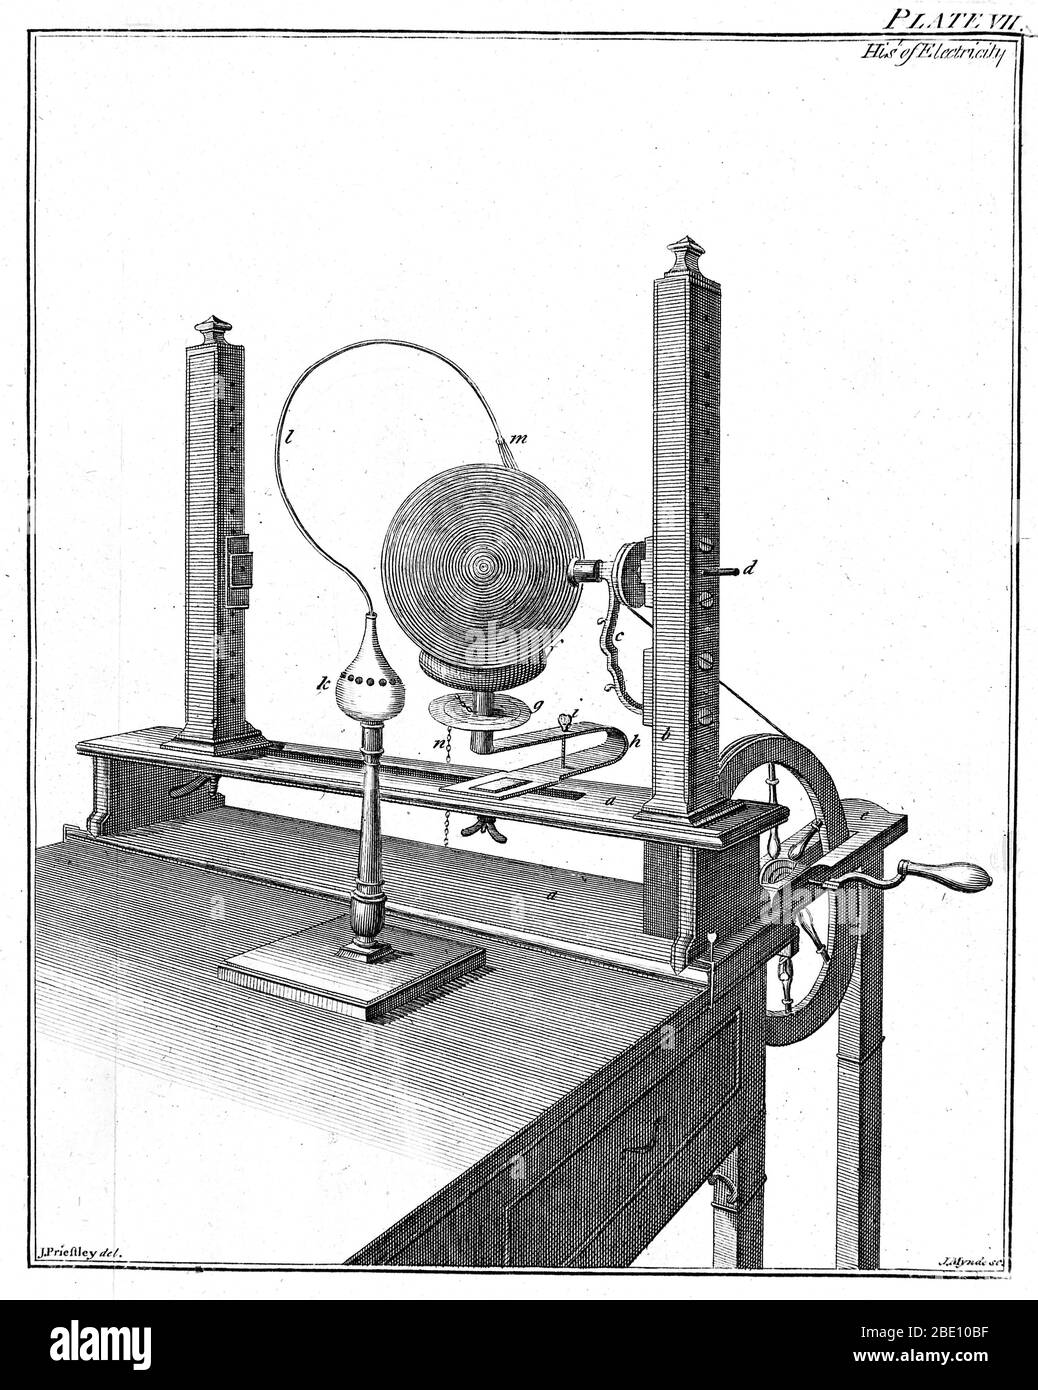 Macchina elettrostatica usata da Joseph Priestley, 1775. Il globo di vetro (in alto a destra) è stato ruotato dalla maniglia contro una 'gomma' fissa (come pelliccia) e la carica raccolta dai fili (in alto a destra) che spazzano il globo. La tensione era presto sufficientemente alta da poter scintille attraverso la distanza (in alto a sinistra). Joseph Priestley (1733-1804) è stato un . La sua ricerca scientifica più famosa è stata sulla natura e le proprietà dei gas. Grazie a un design intelligente degli apparecchi e a un'attenta manipolazione, Priestley isolò e caratterizzò otto gas, tra cui l'ossigeno, e da questo lavoro emerse la sua più importante attività scientifica Foto Stock